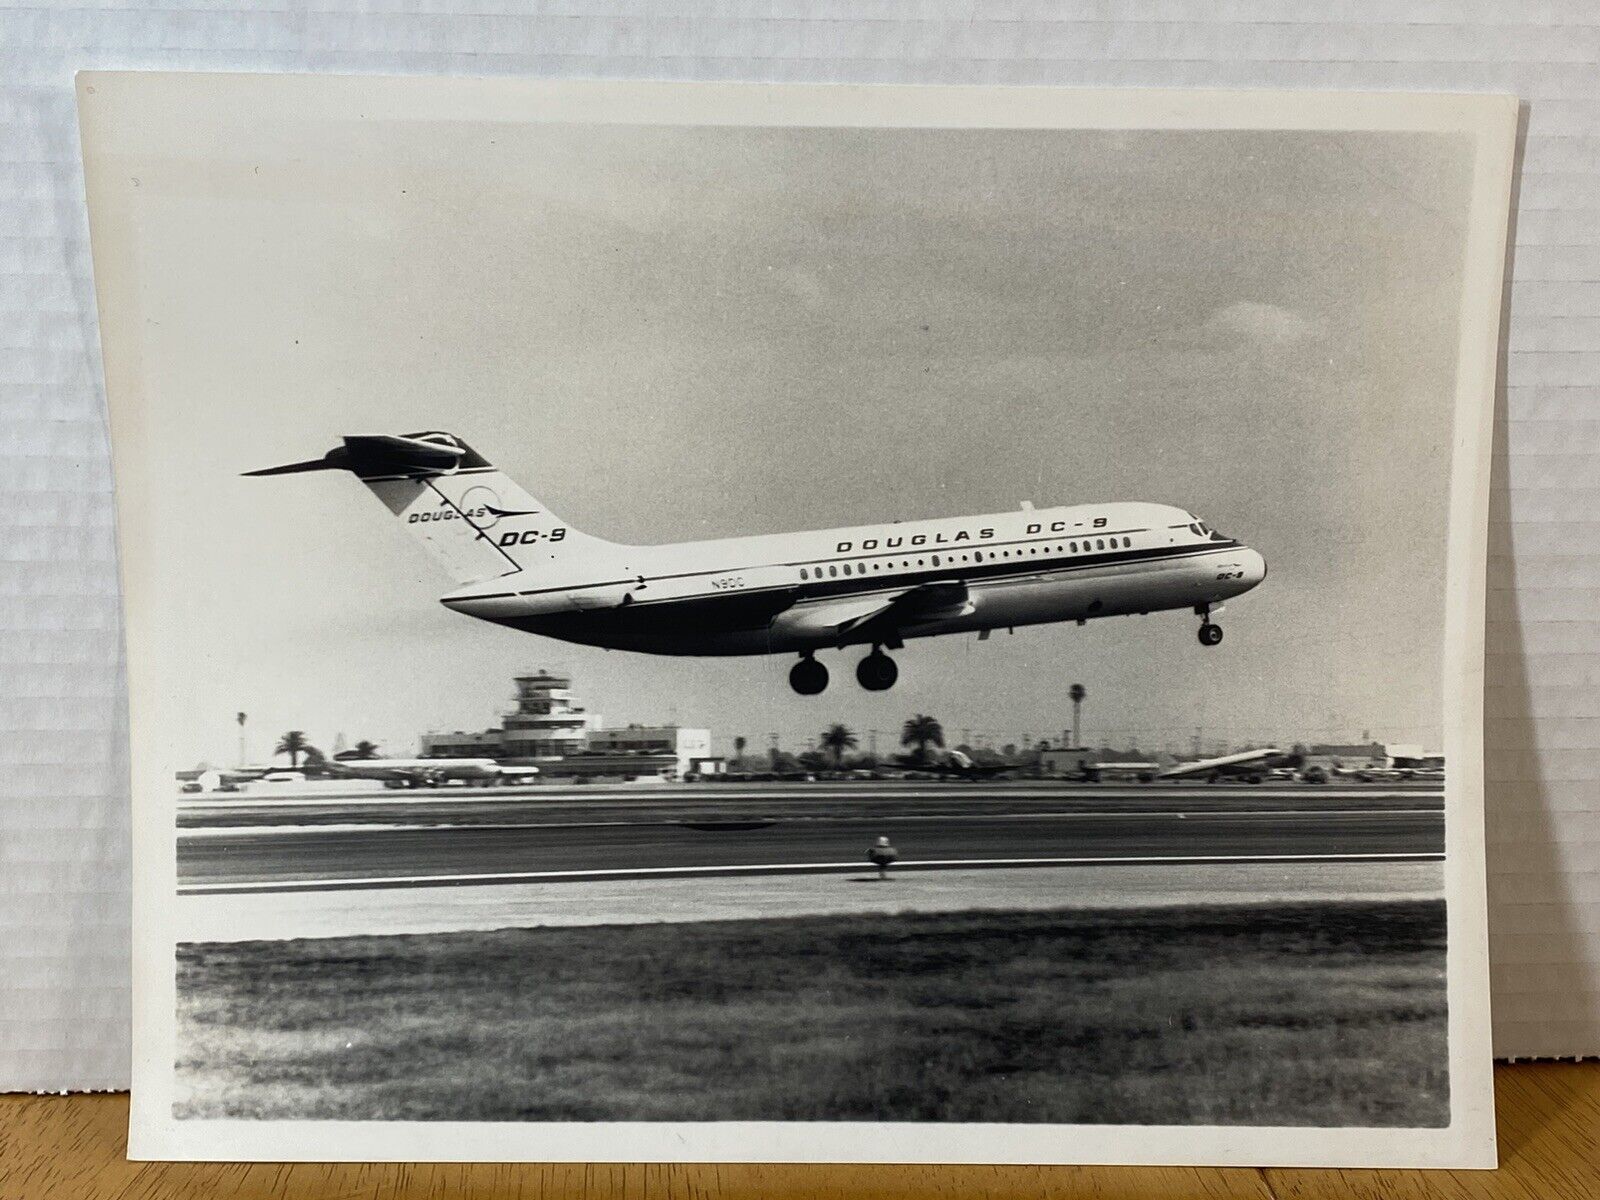 Douglas DC-9 JETLINER N900 Taking Flight Vintage